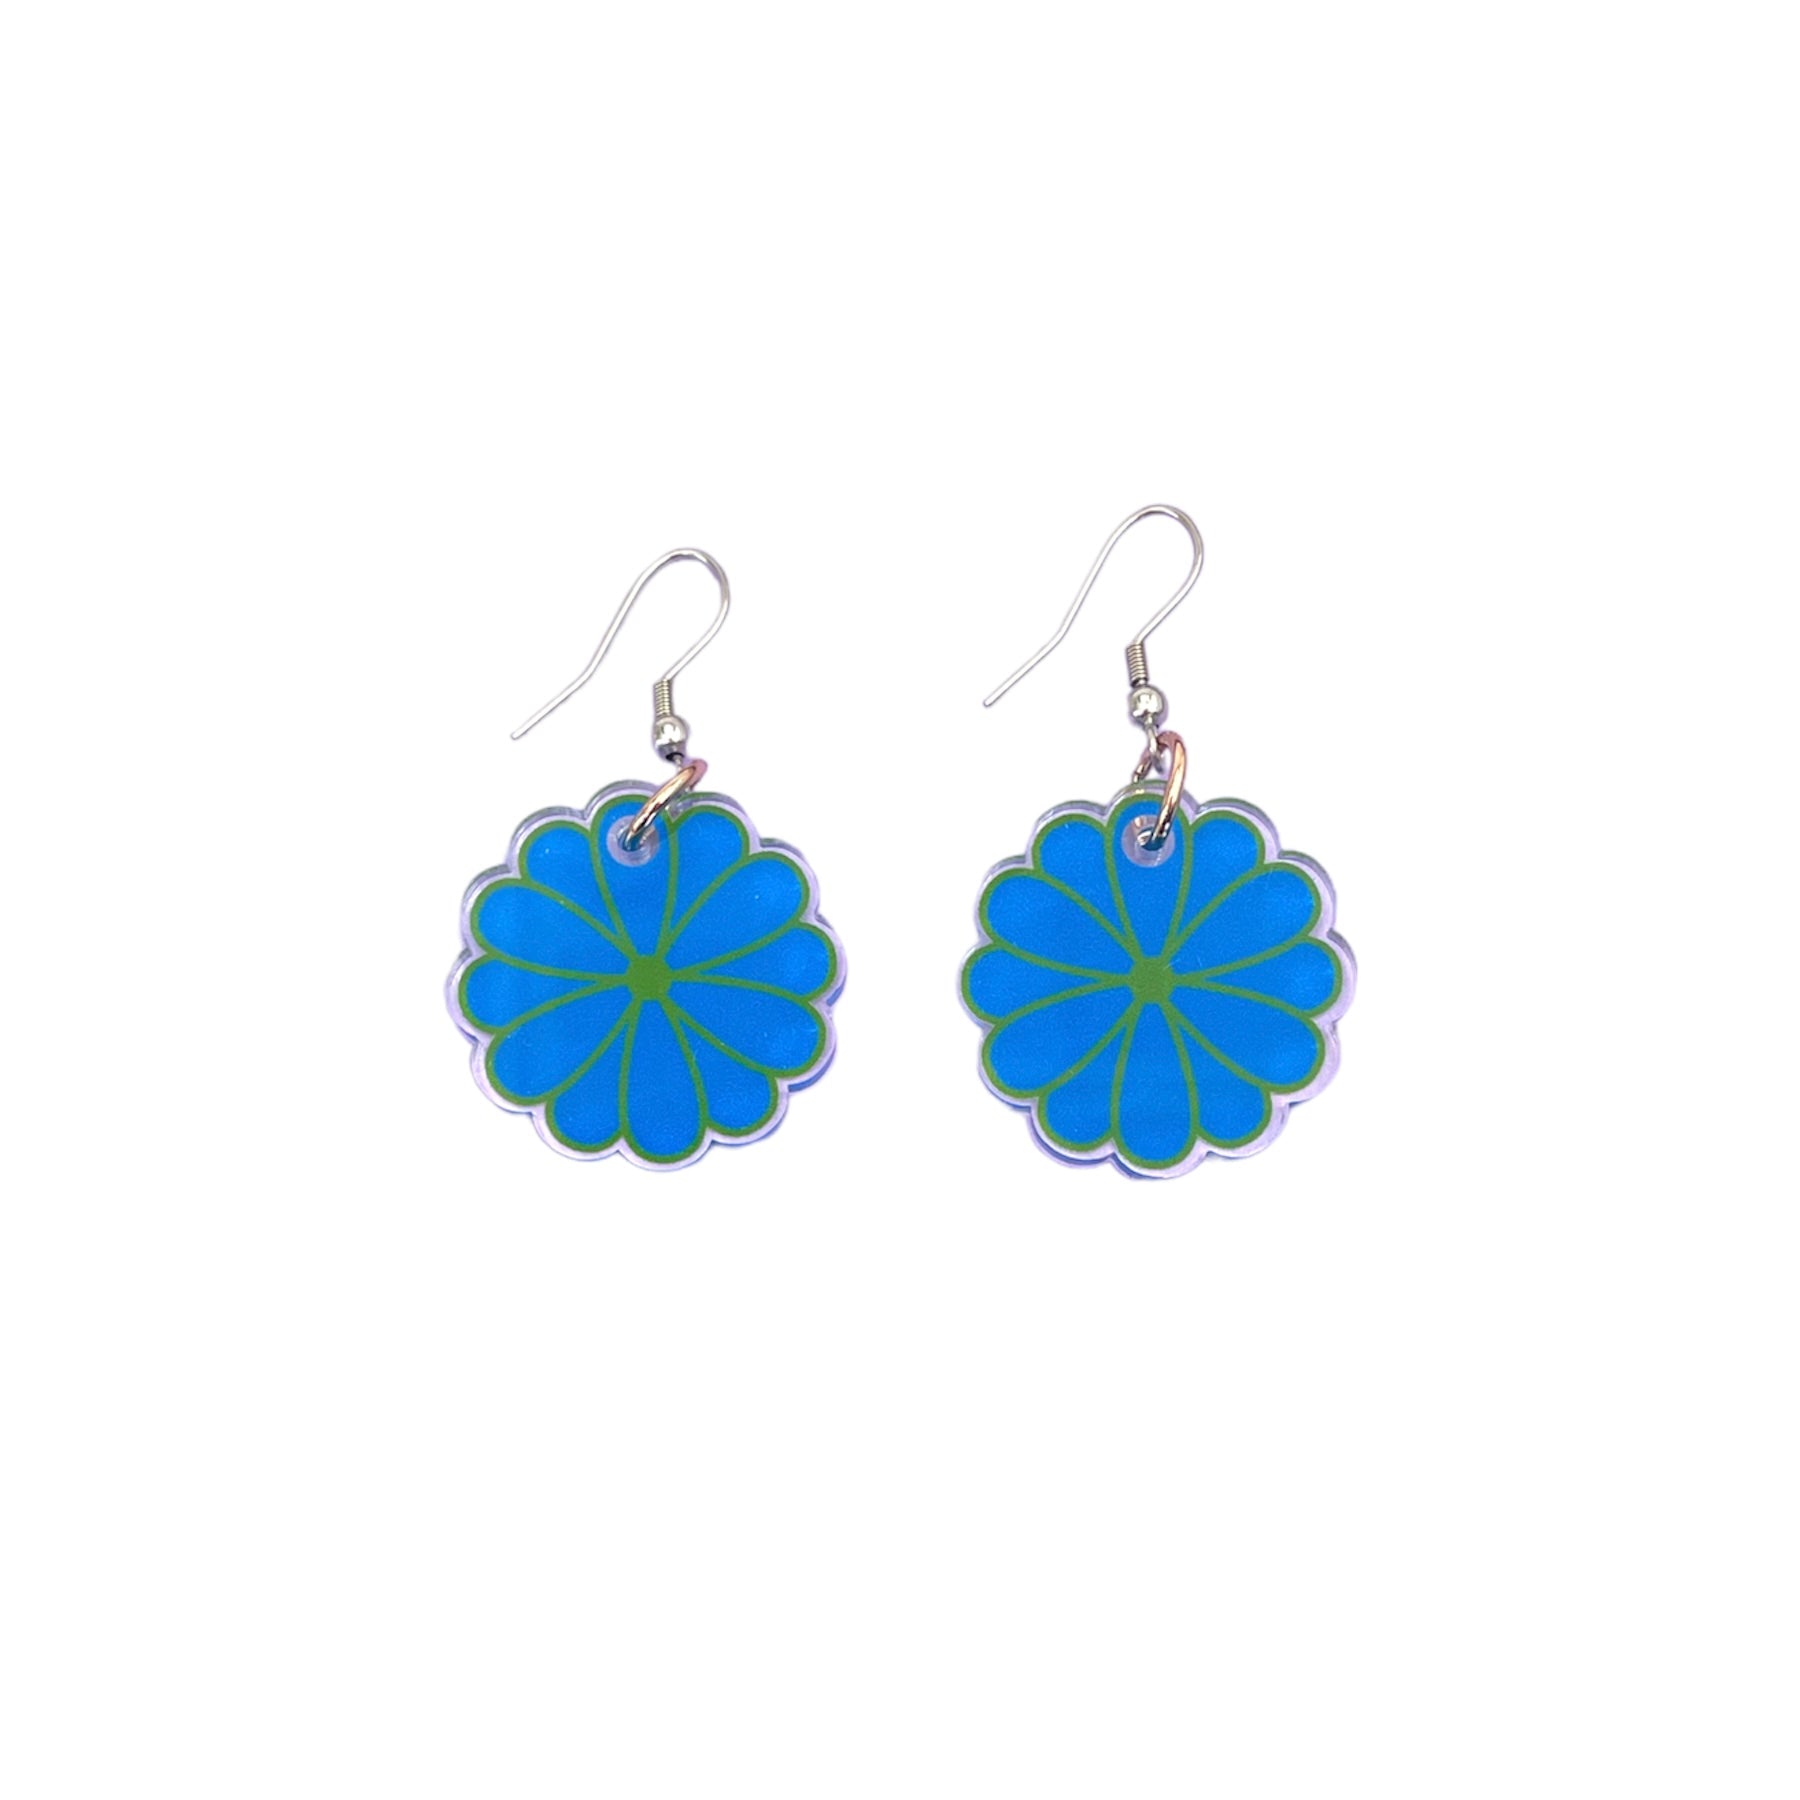 CLEARANCE - Pom Pom Flower Drop Earrings Blue & Green